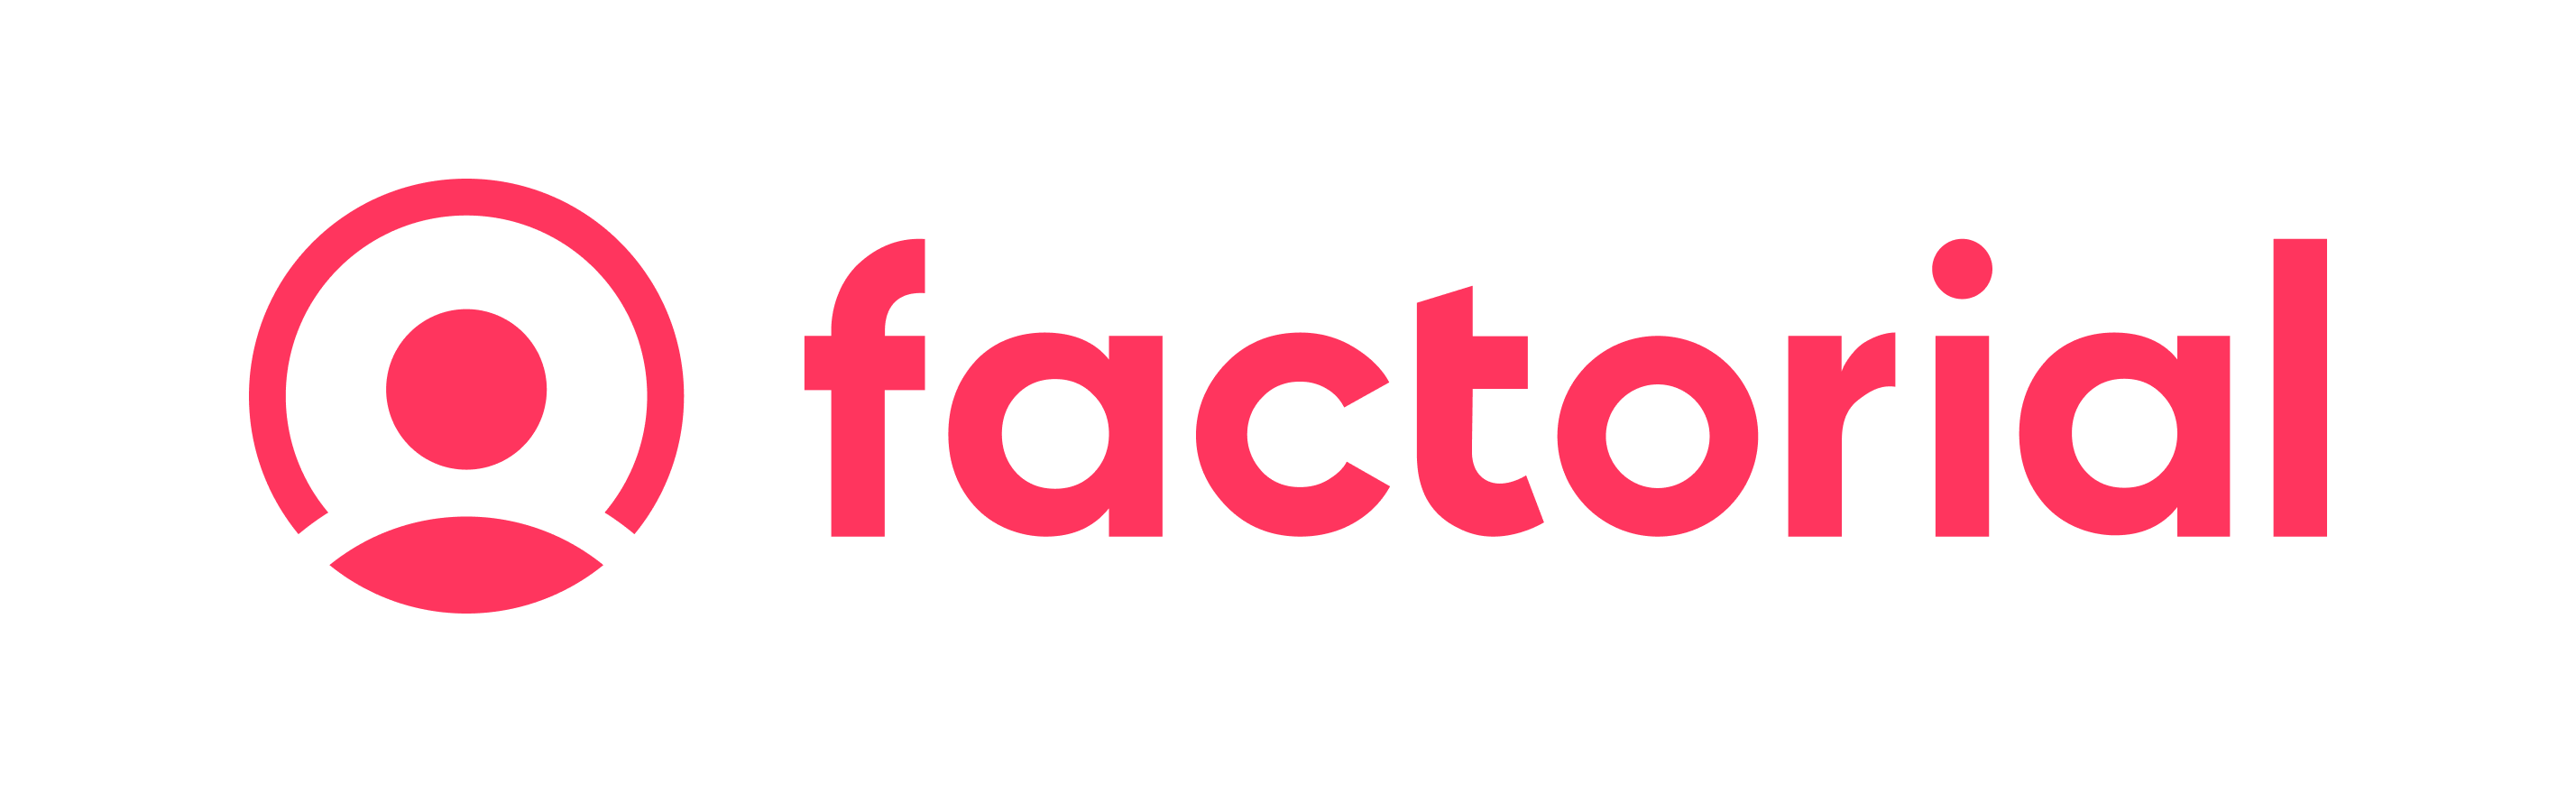 Logo Factorial